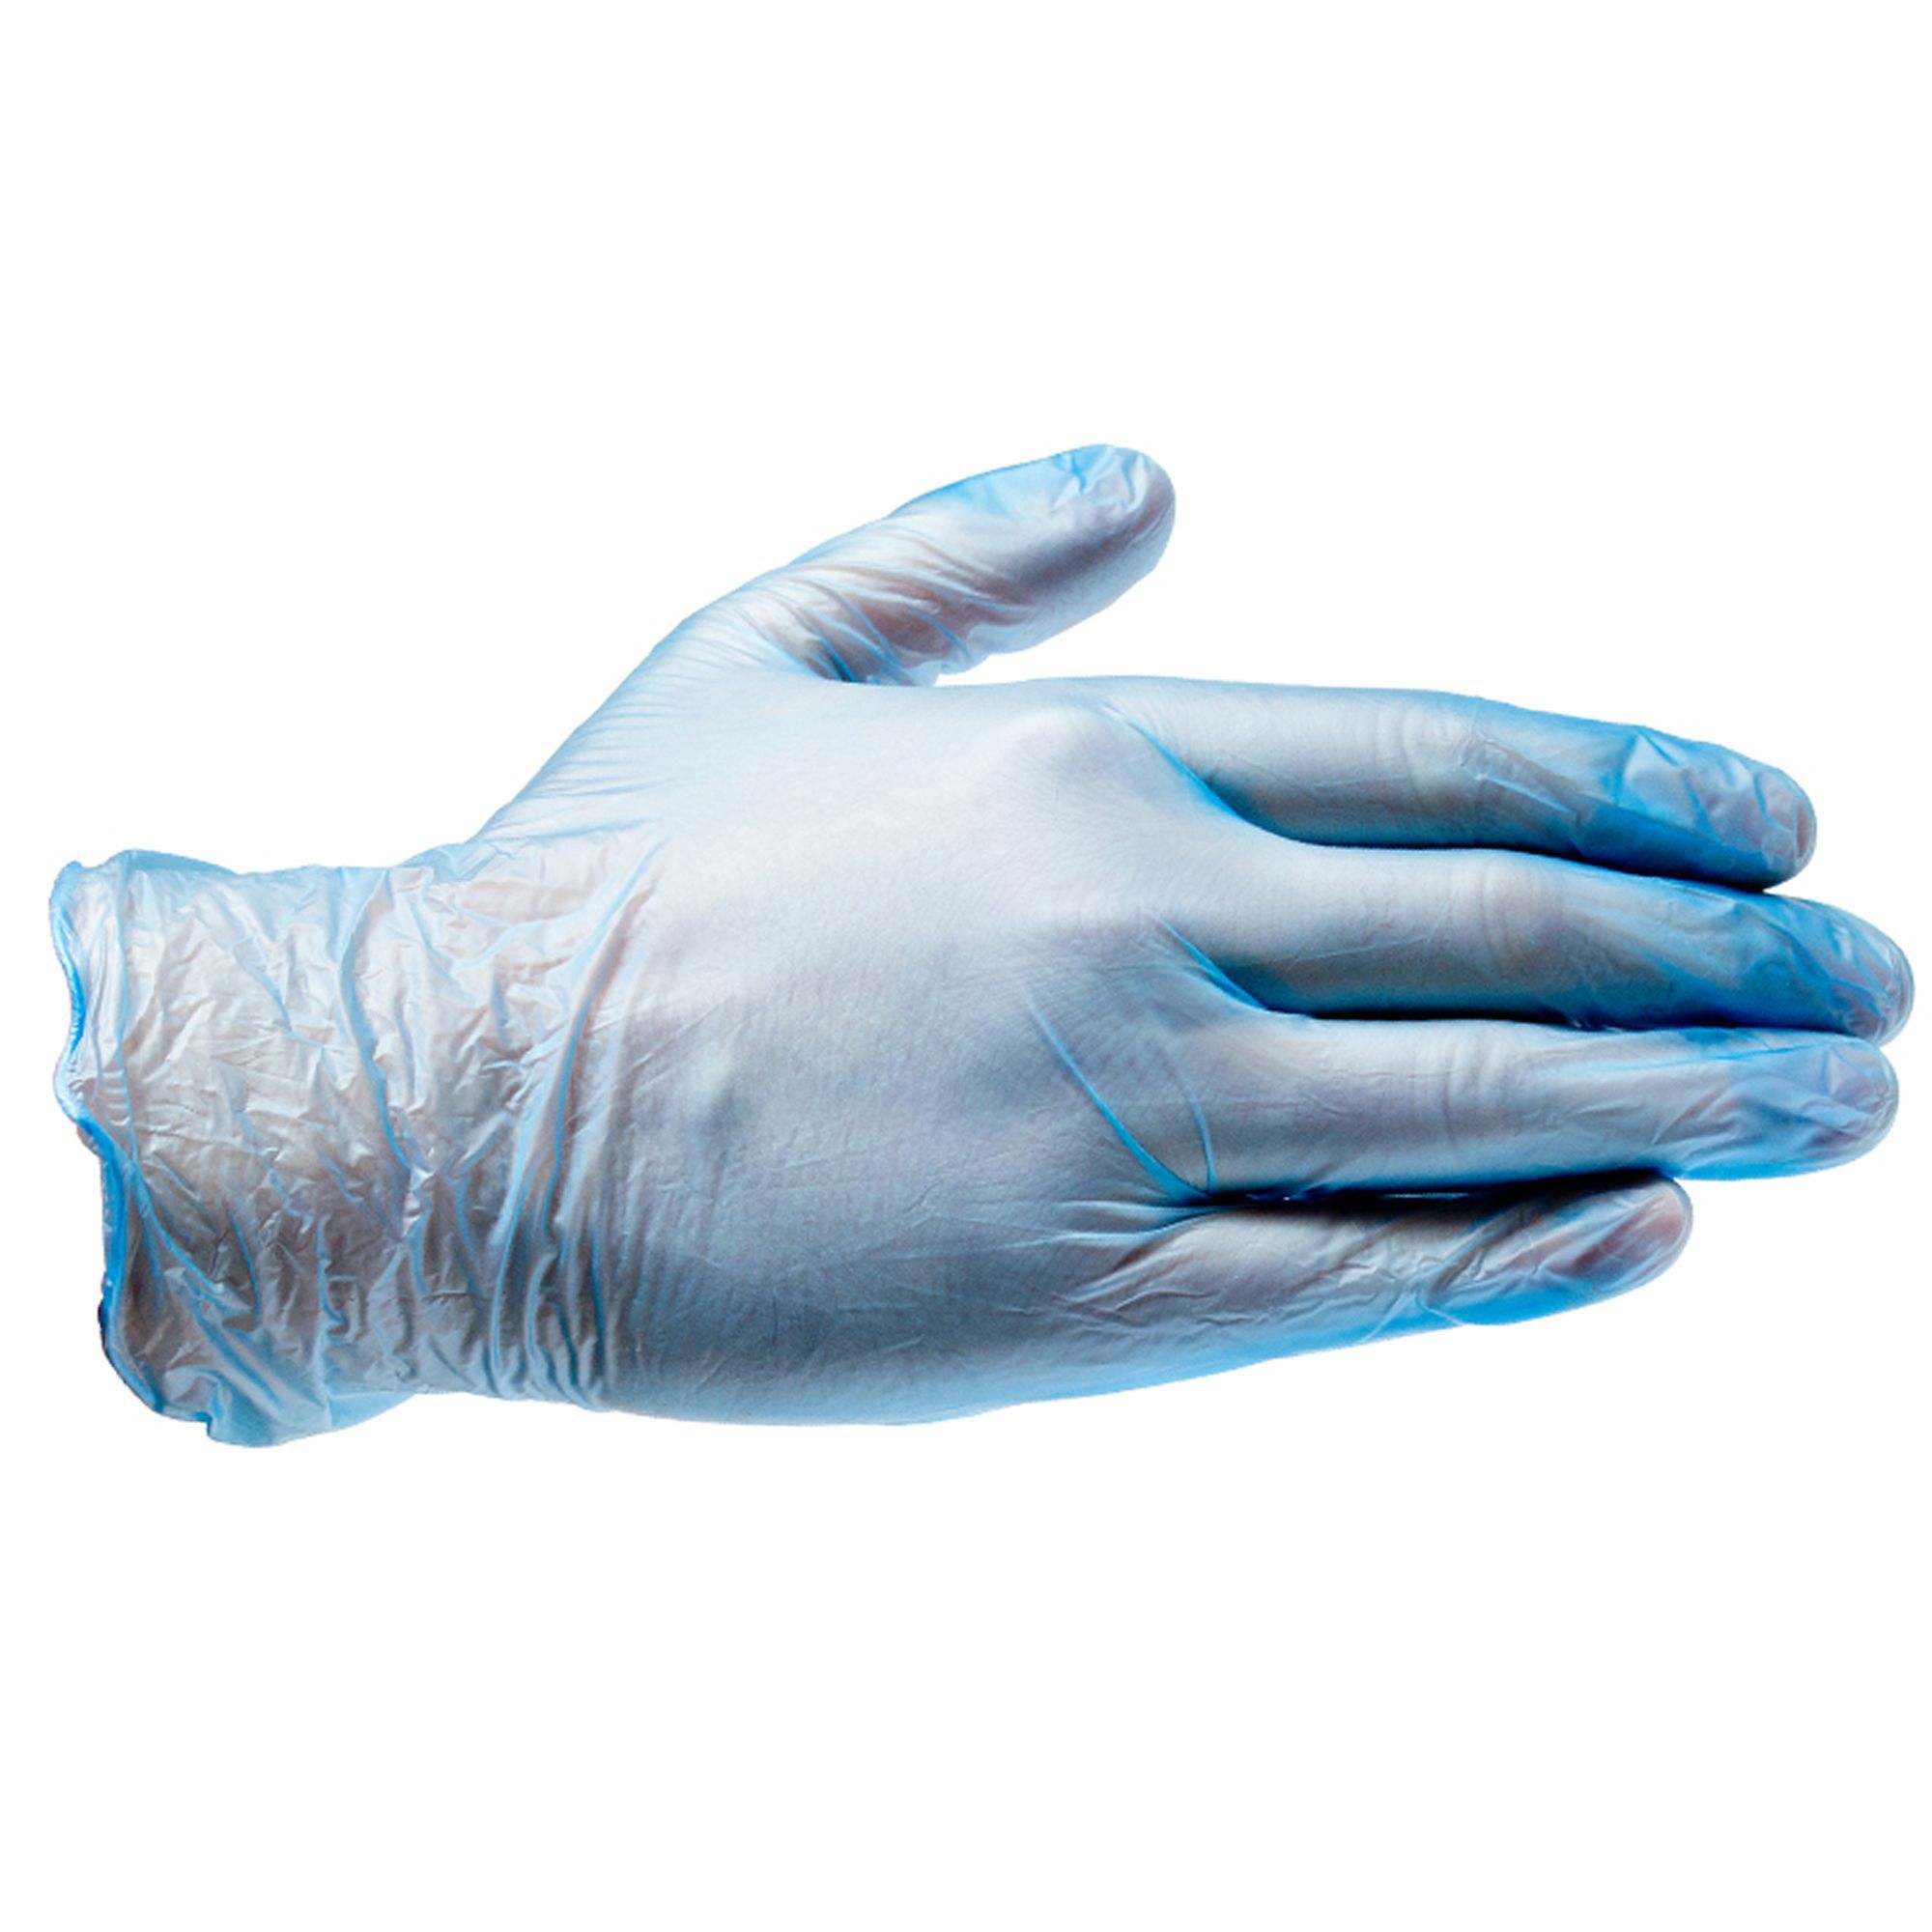 Diall Vinyl Disposable gloves, Medium